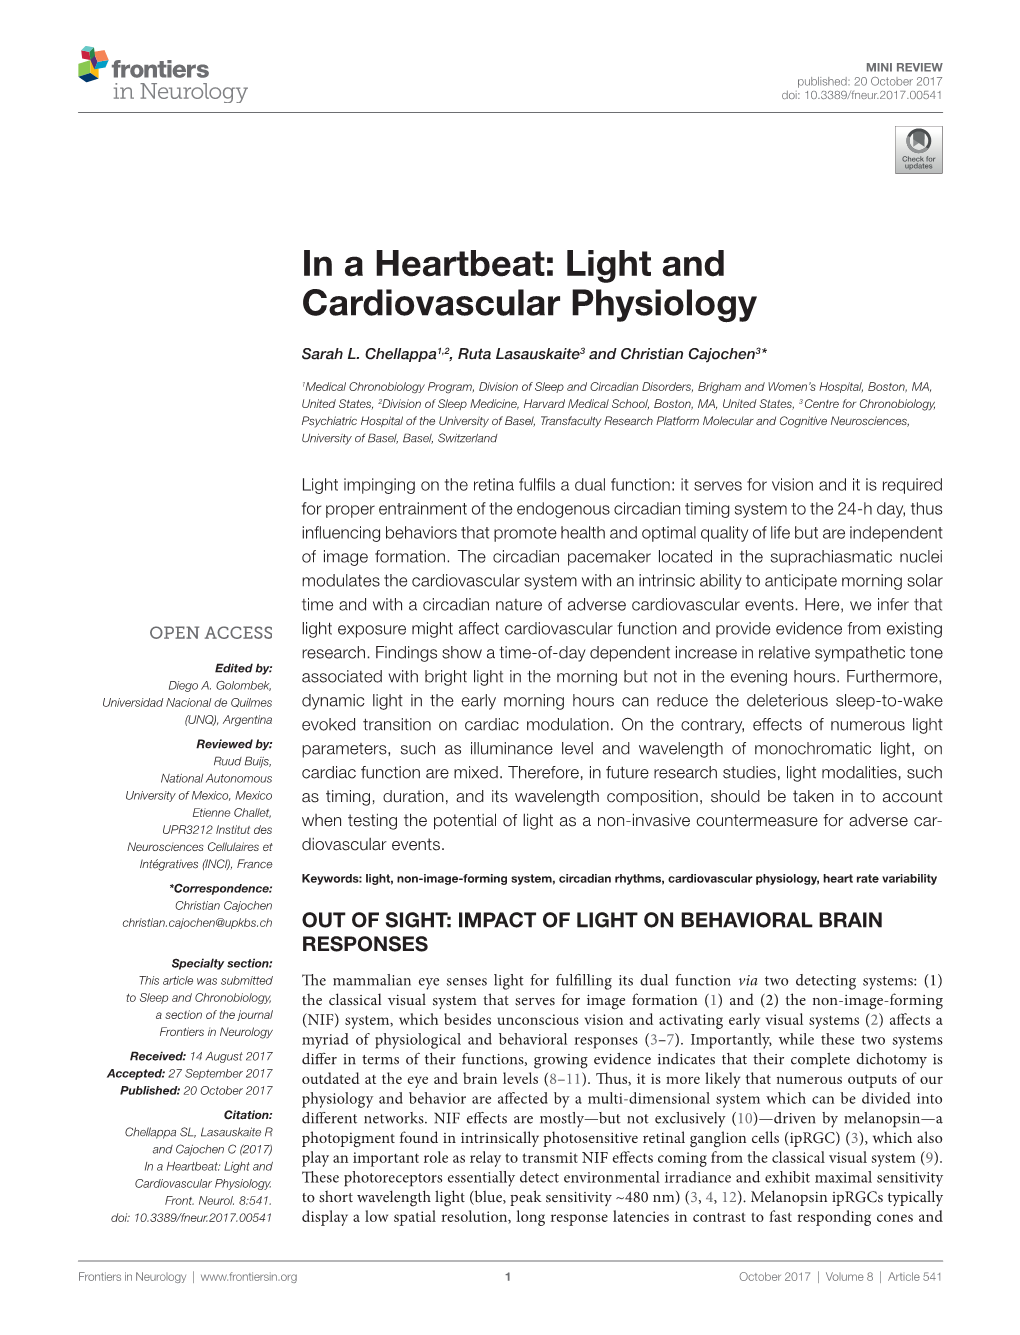 Light and Cardiovascular Physiology